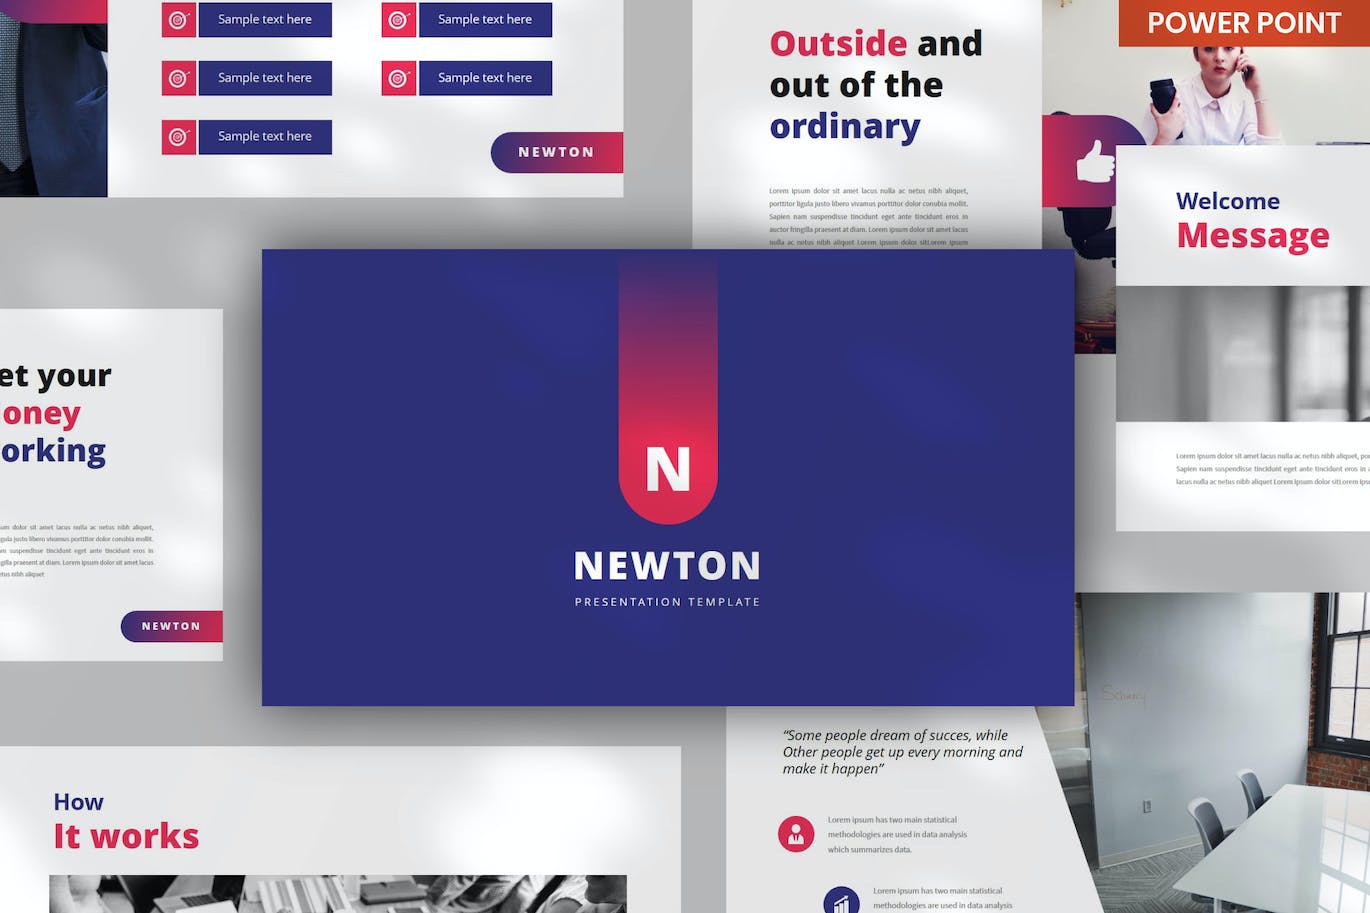 企业产品展示PPT模板下载 Newton Business PowerPoint 幻灯图表 第1张